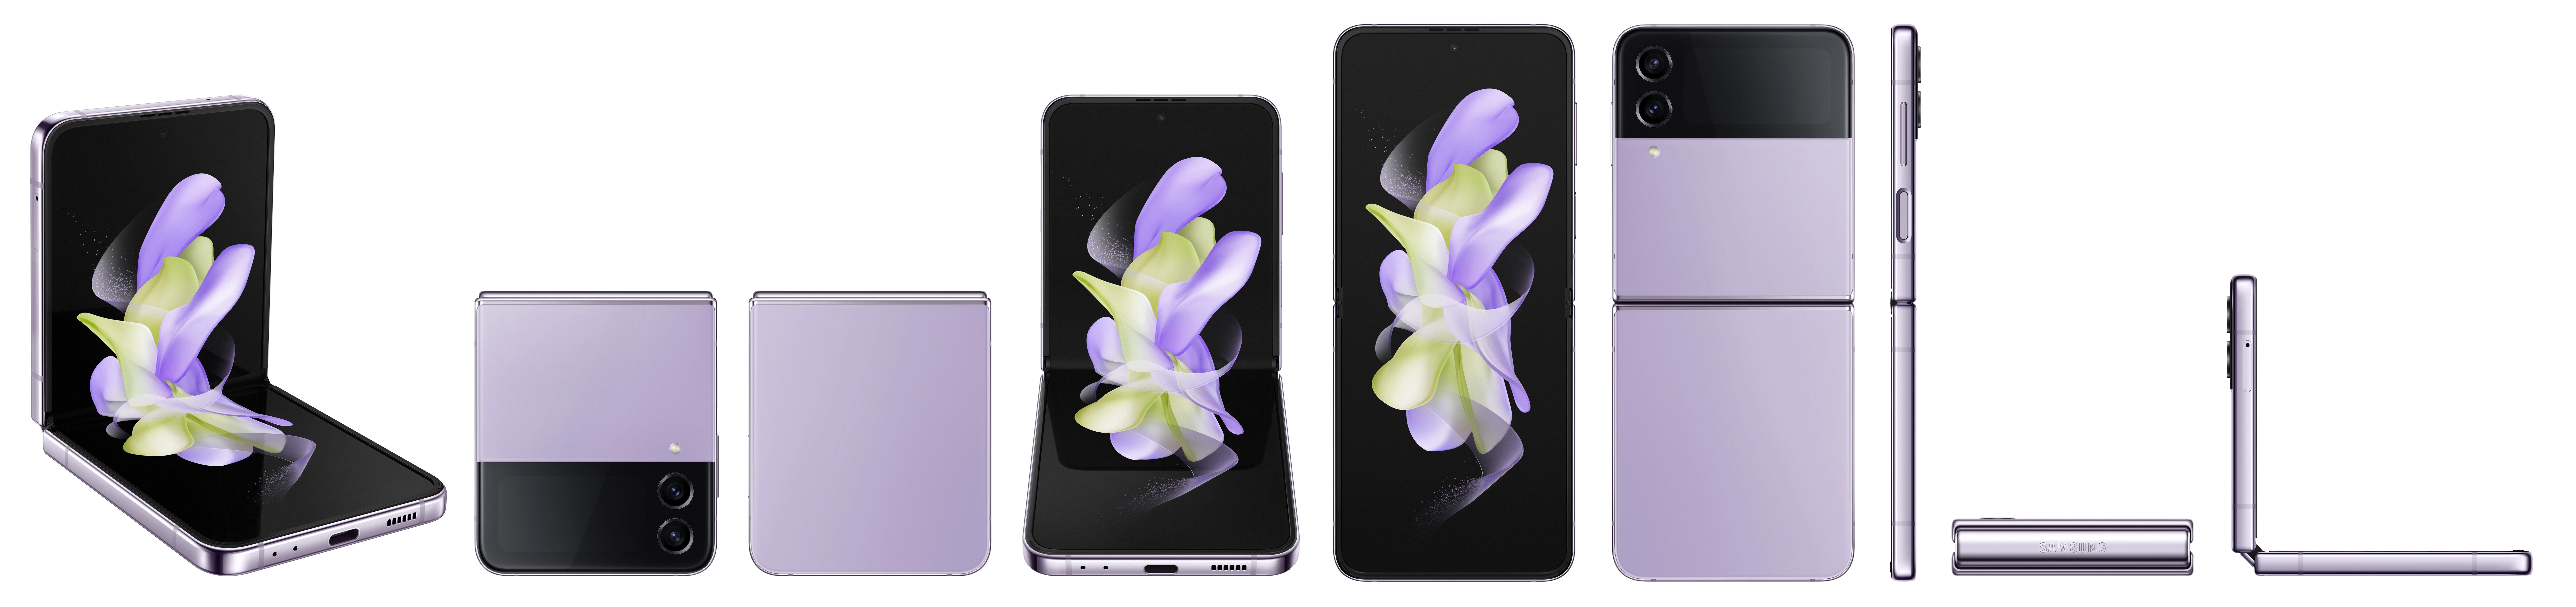 Samsung Galaxy Z Flip 4 Bora Purple